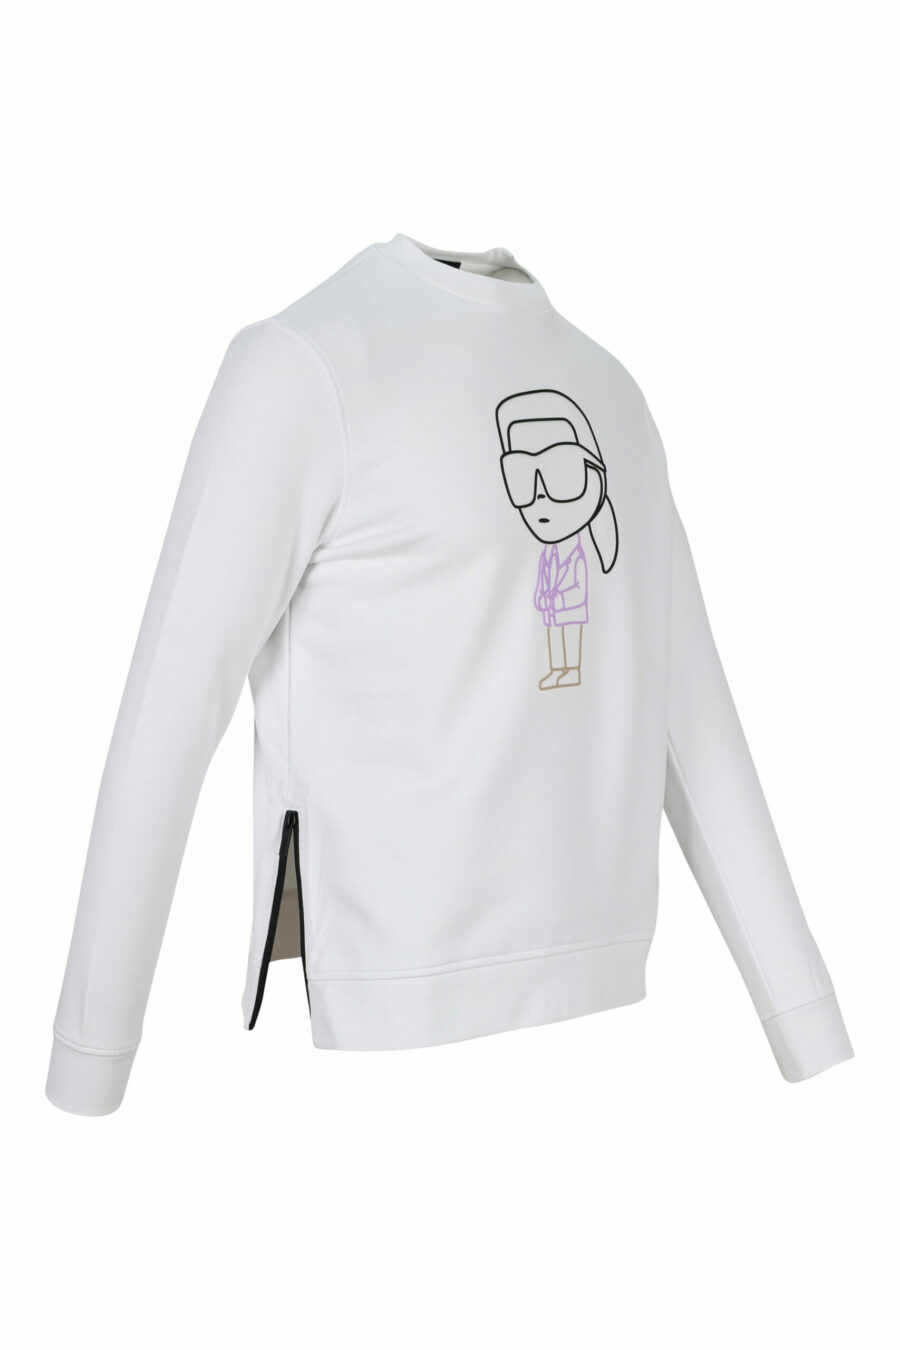 Weißes Sweatshirt mit mehrfarbigem "karl silhouette" Maxilogo - 4062226392853 1 skaliert